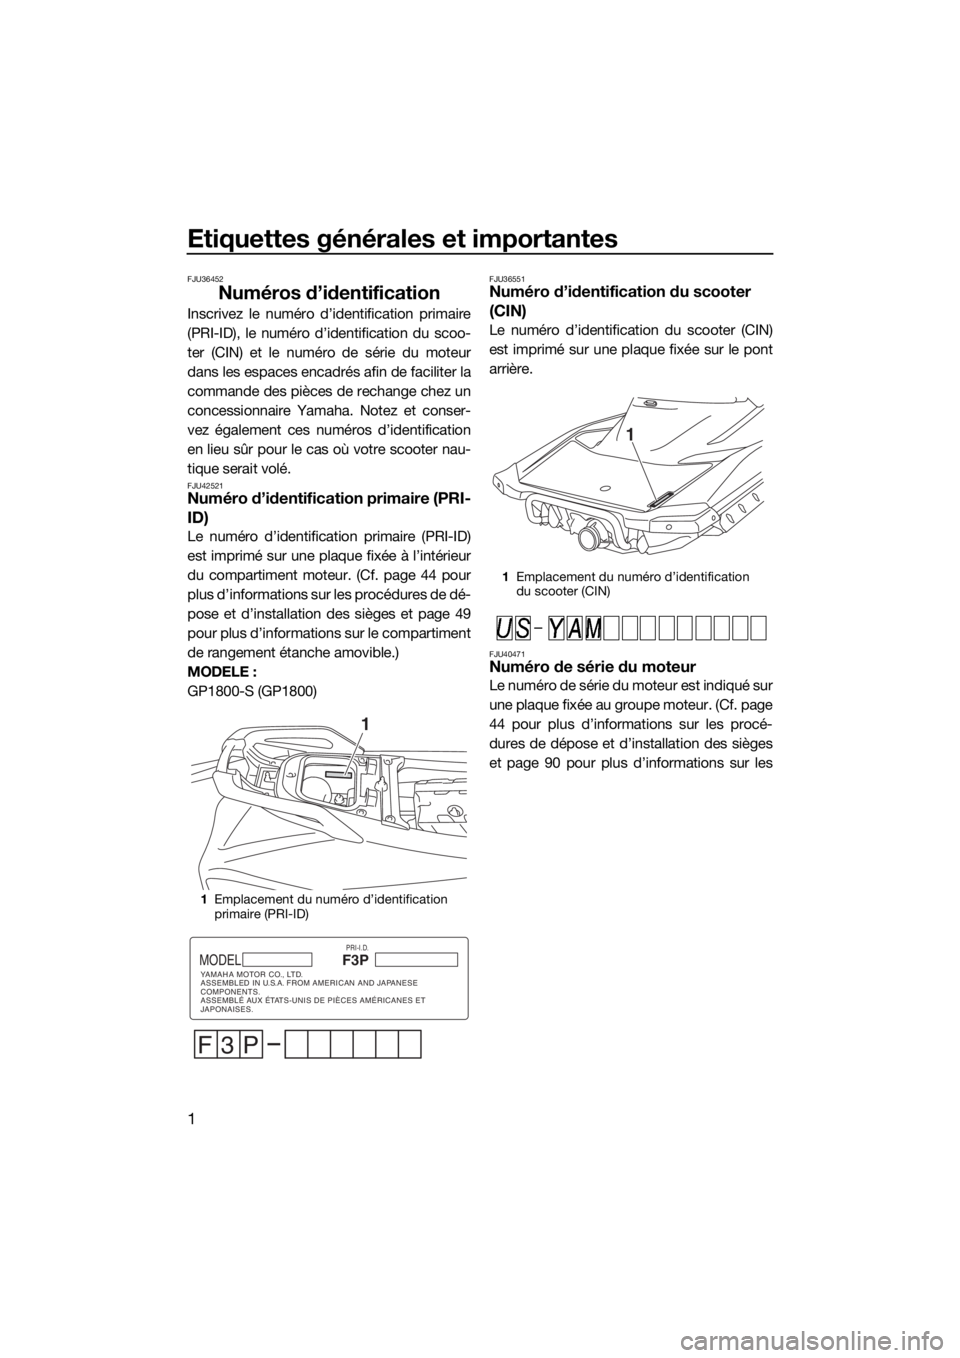 YAMAHA GP1800 2017  Notices Demploi (in French) Etiquettes générales et importantes
1
FJU36452
Numéros d’identification
Inscrivez le numéro d’identification primaire
(PRI-ID), le numéro d’identification du scoo-
ter (CIN) et le numéro d